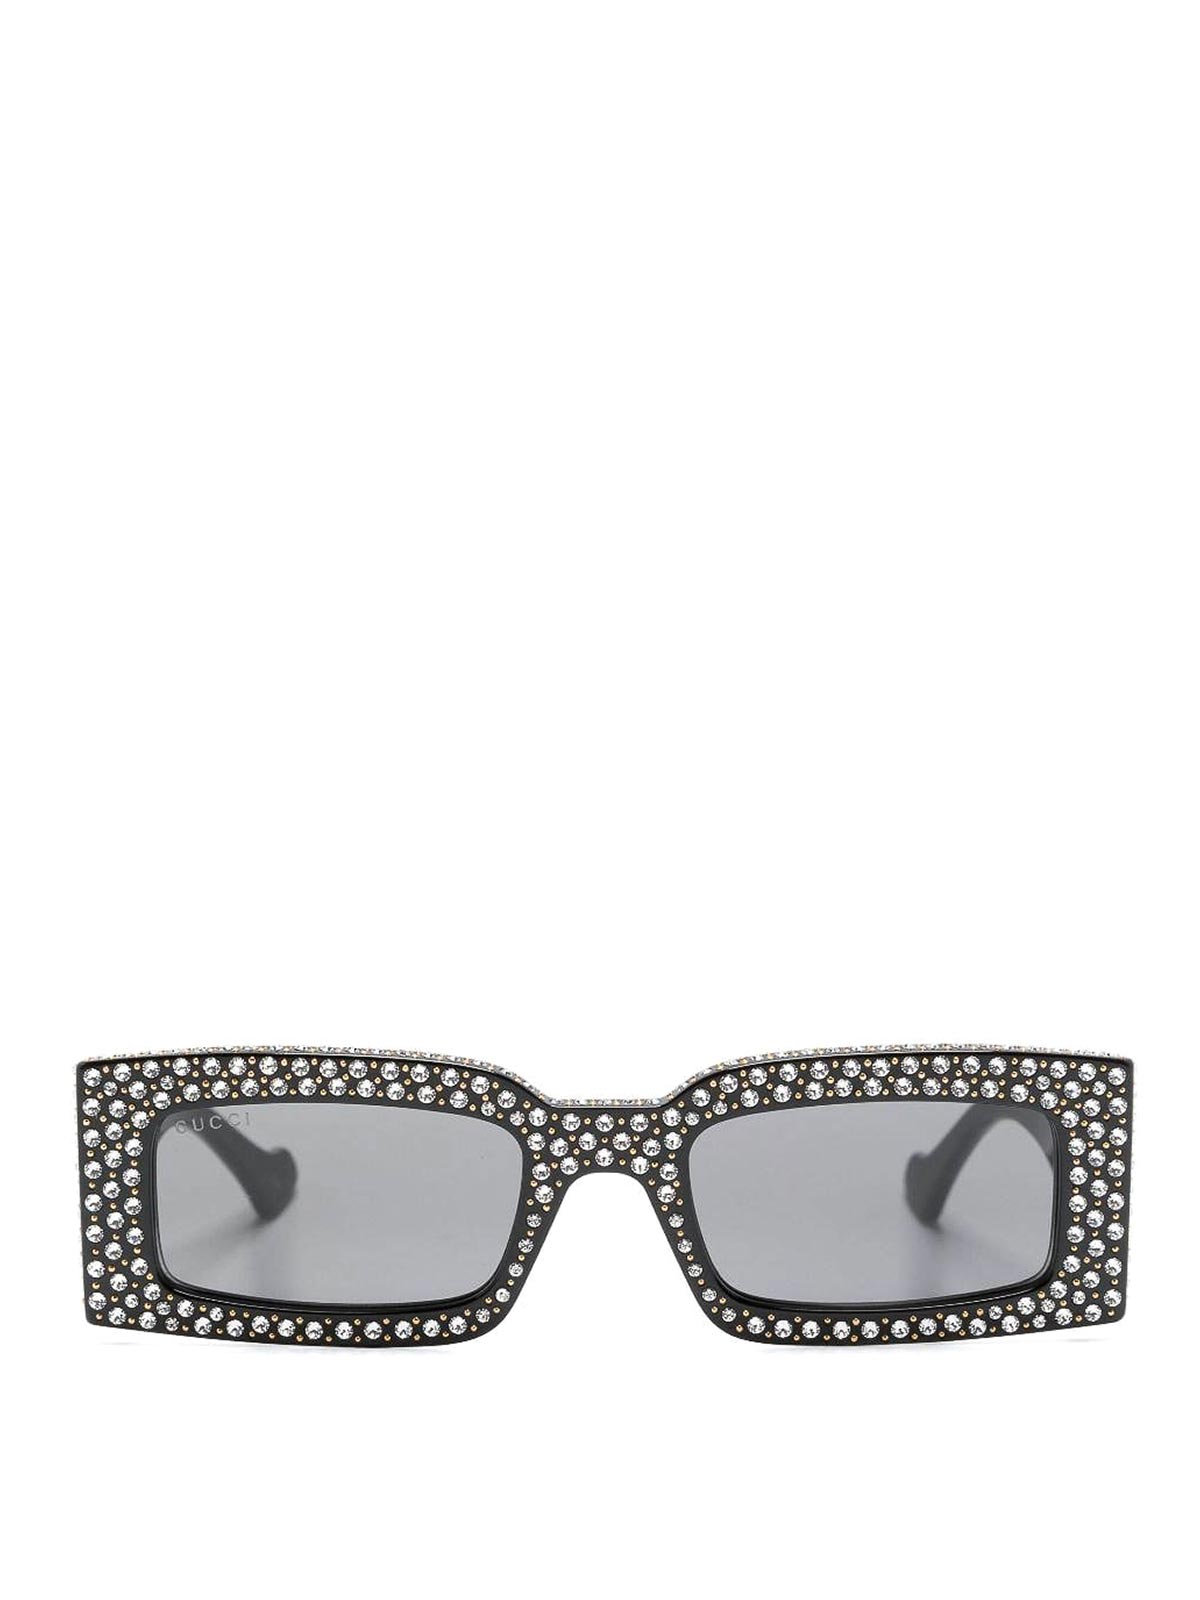 Gucci Eyeglasses In Black